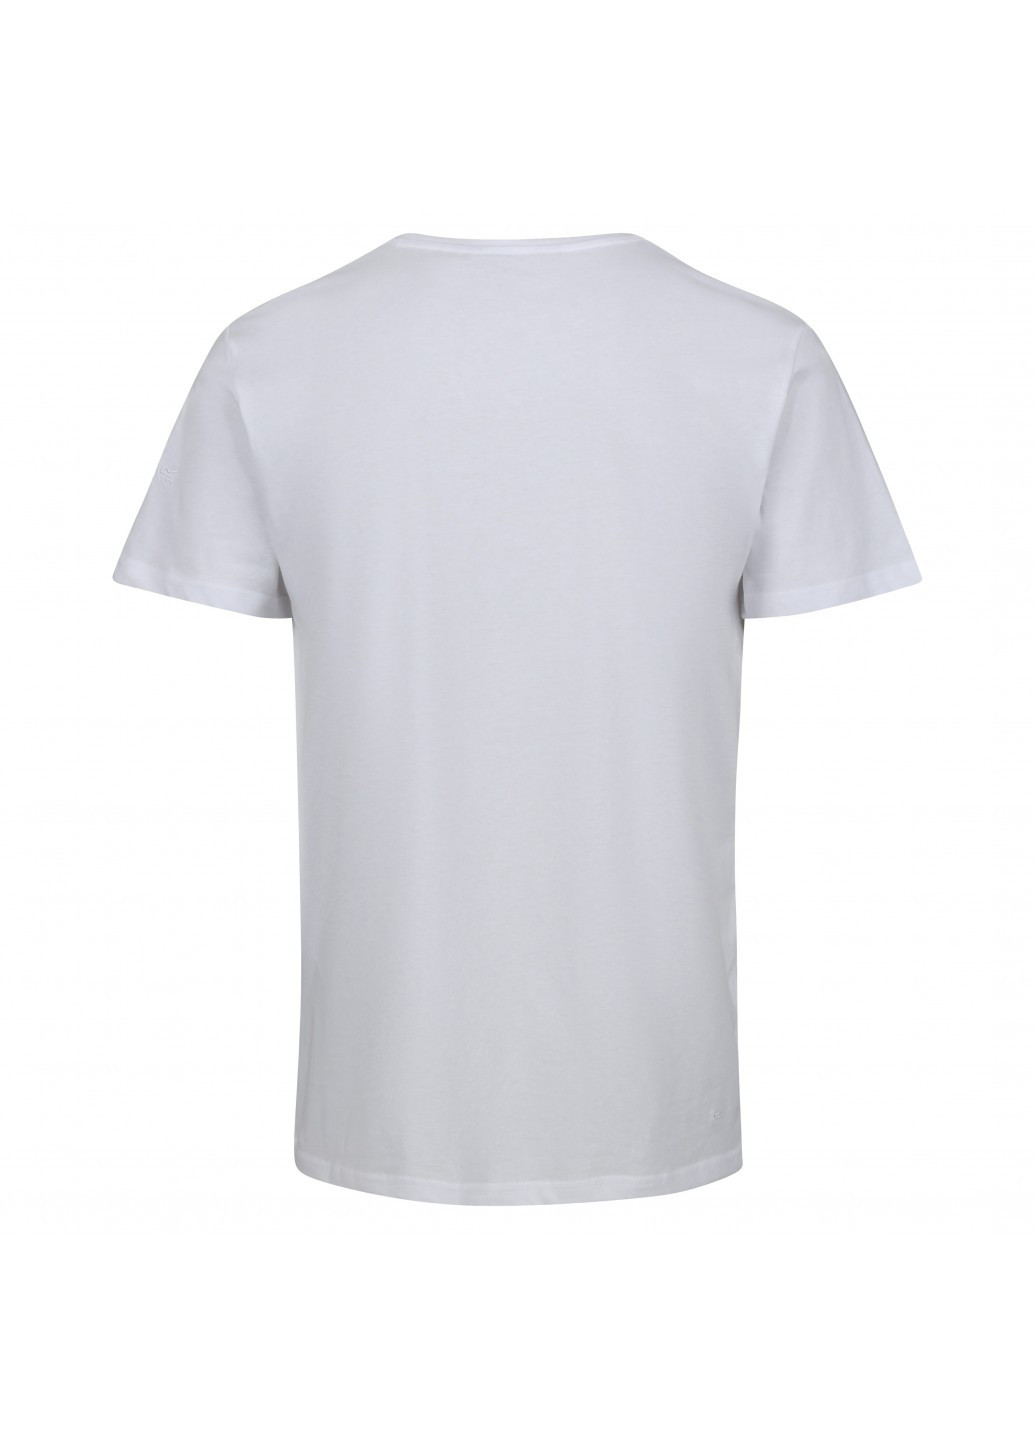 Біла футболка Regatta RMT263-X9W